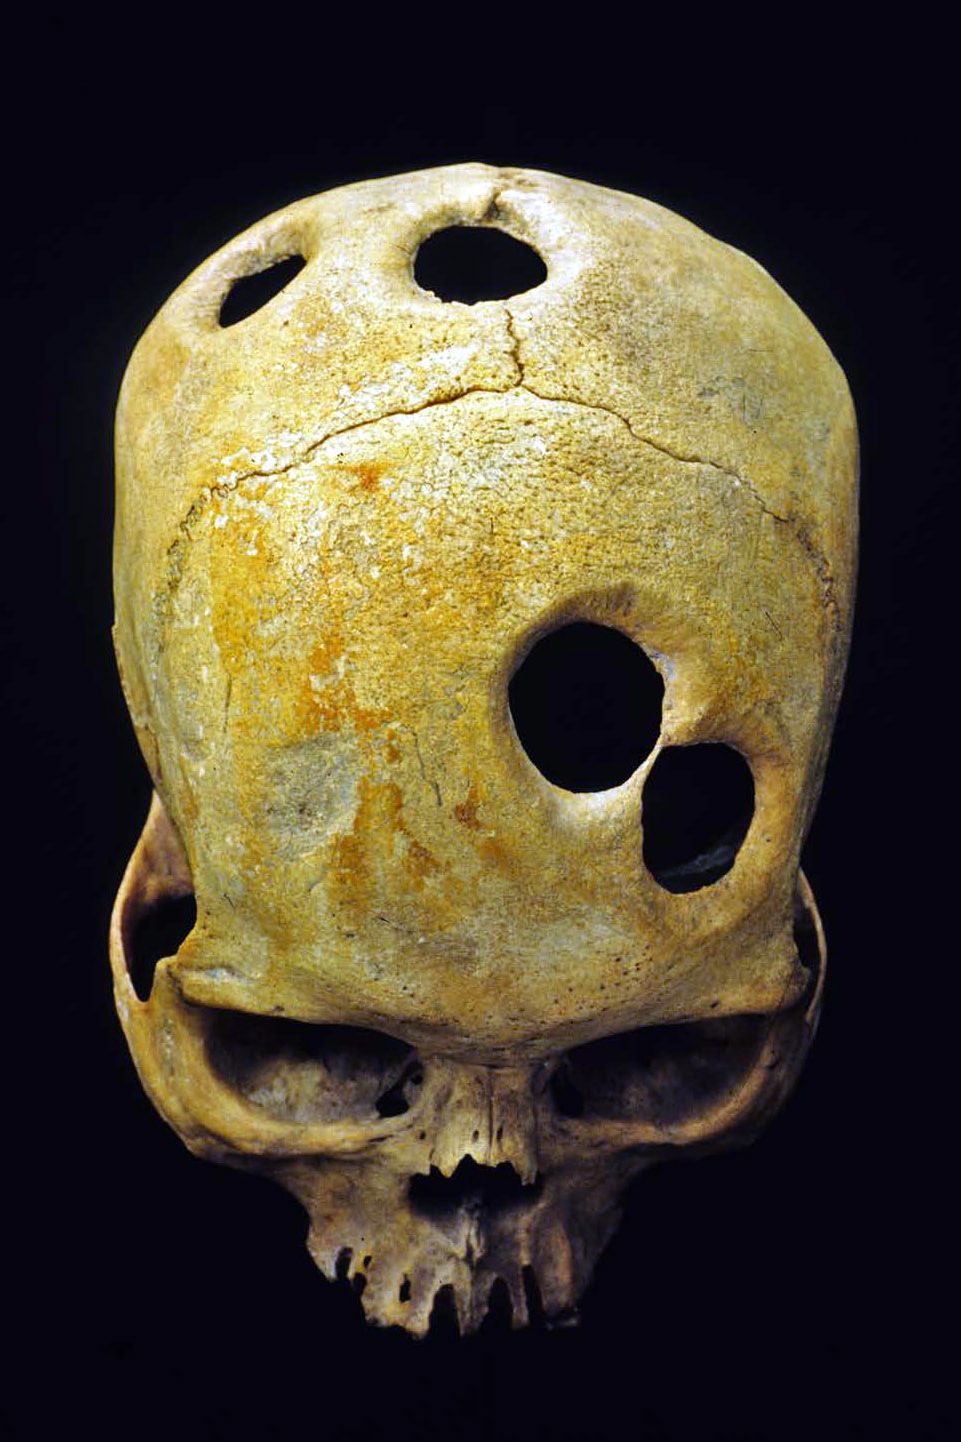 Were mystery holes in skulls an ancient aspirin? | CNN